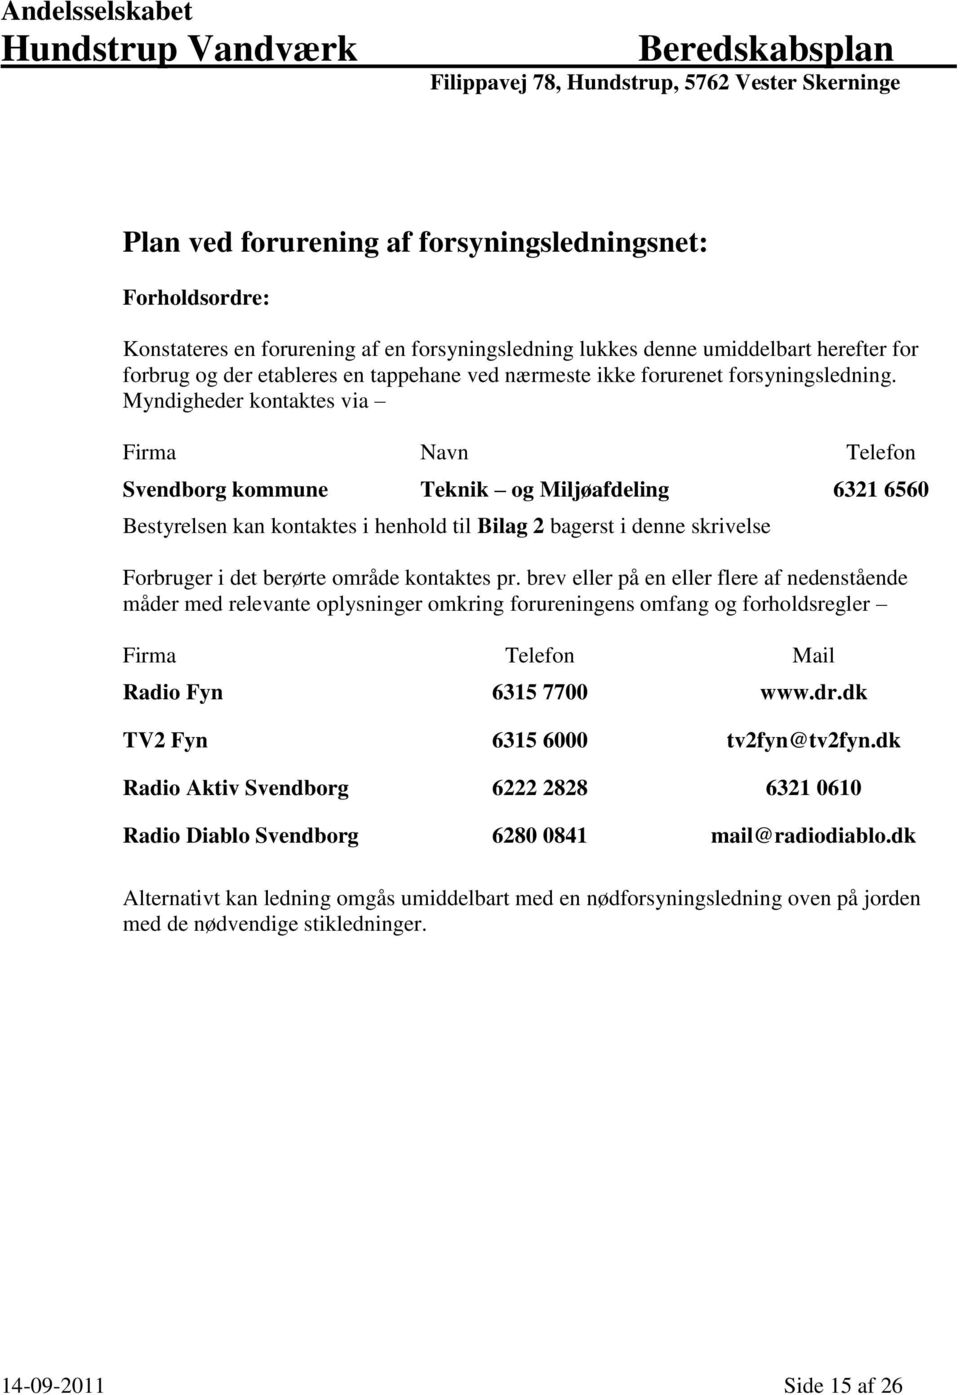 Myndigheder kontaktes via Firma Navn Telefon Svendborg kommune Teknik og Miljøafdeling 6321 6560 Bestyrelsen kan kontaktes i henhold til Bilag 2 bagerst i denne skrivelse Forbruger i det berørte